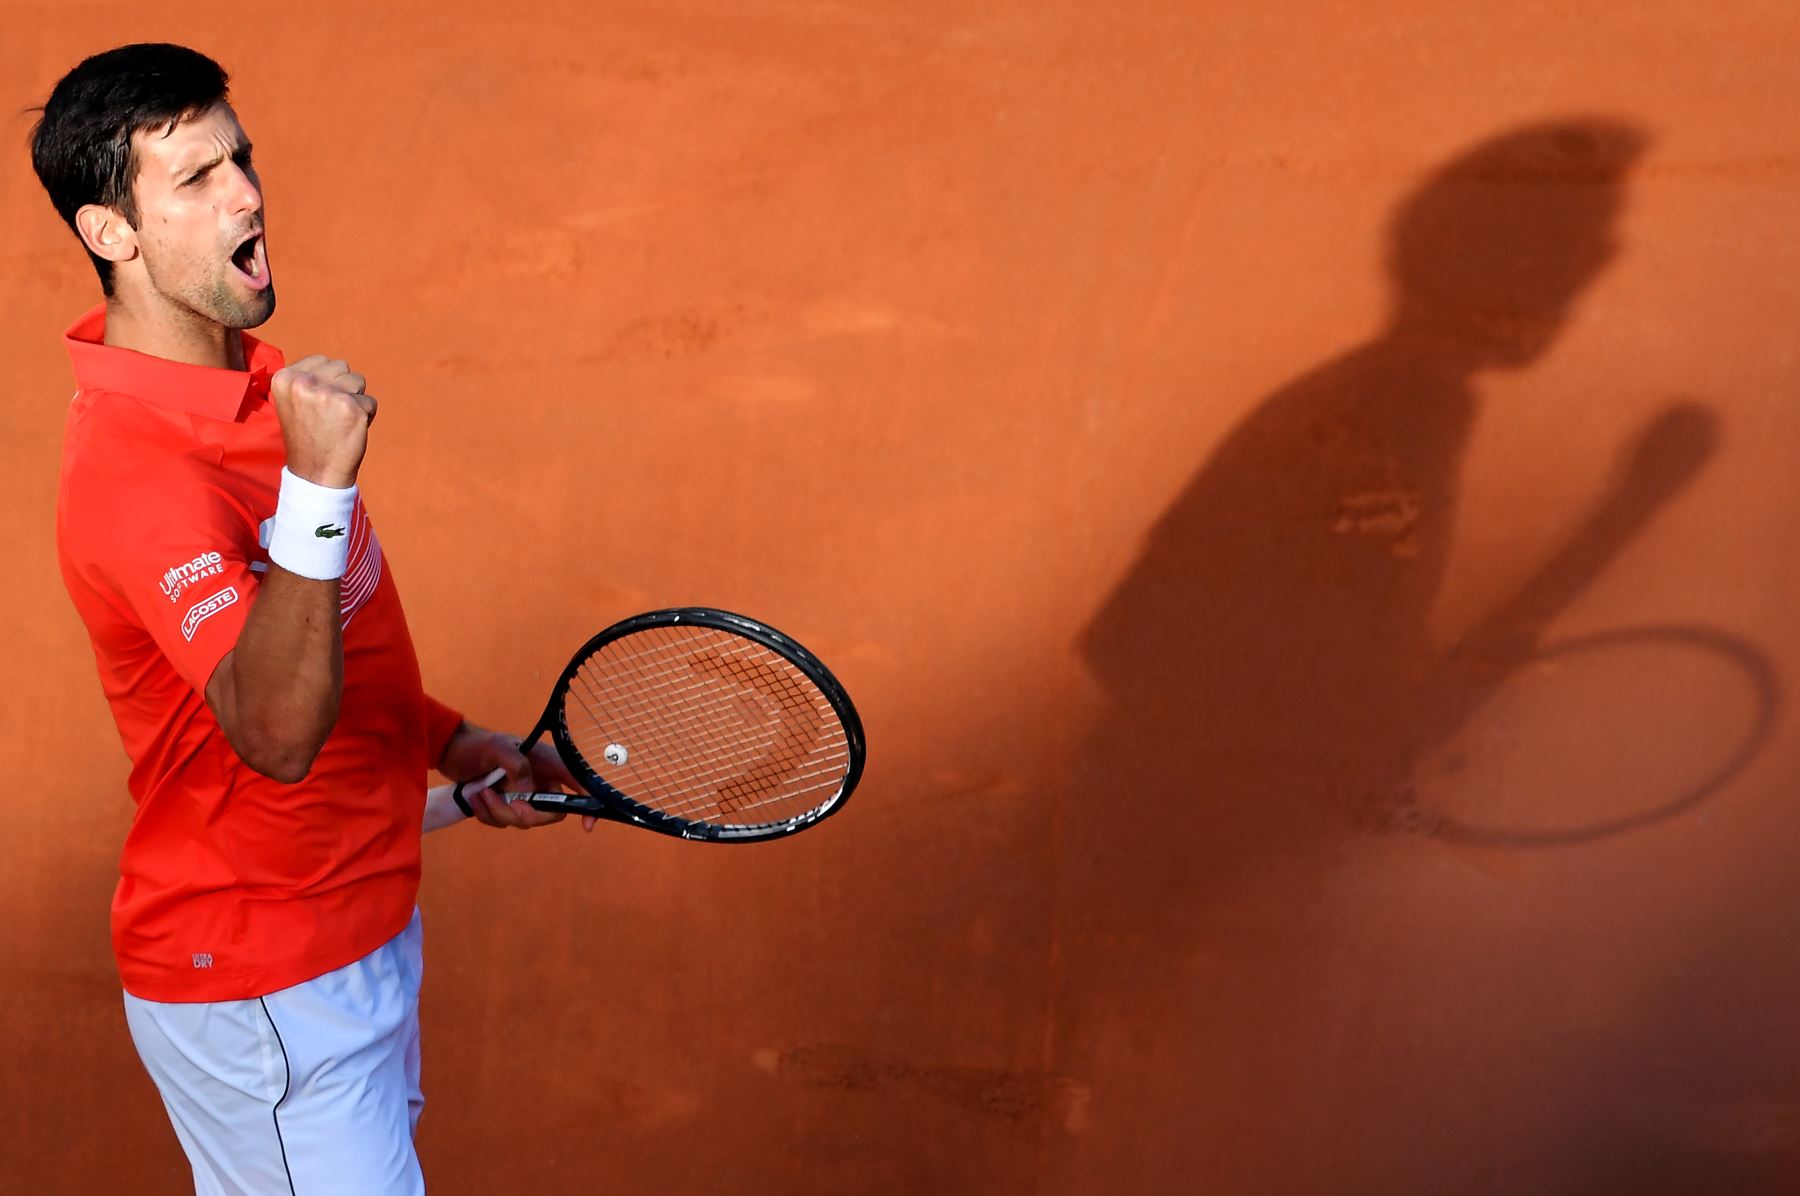 Novak Djokovic de Serbia reacciona después de ganar un punto contra Rafael Nadal de España durante su último partido de tenis del torneo ATP Masters en el Foro Italico en Roma .
Foto:AFP